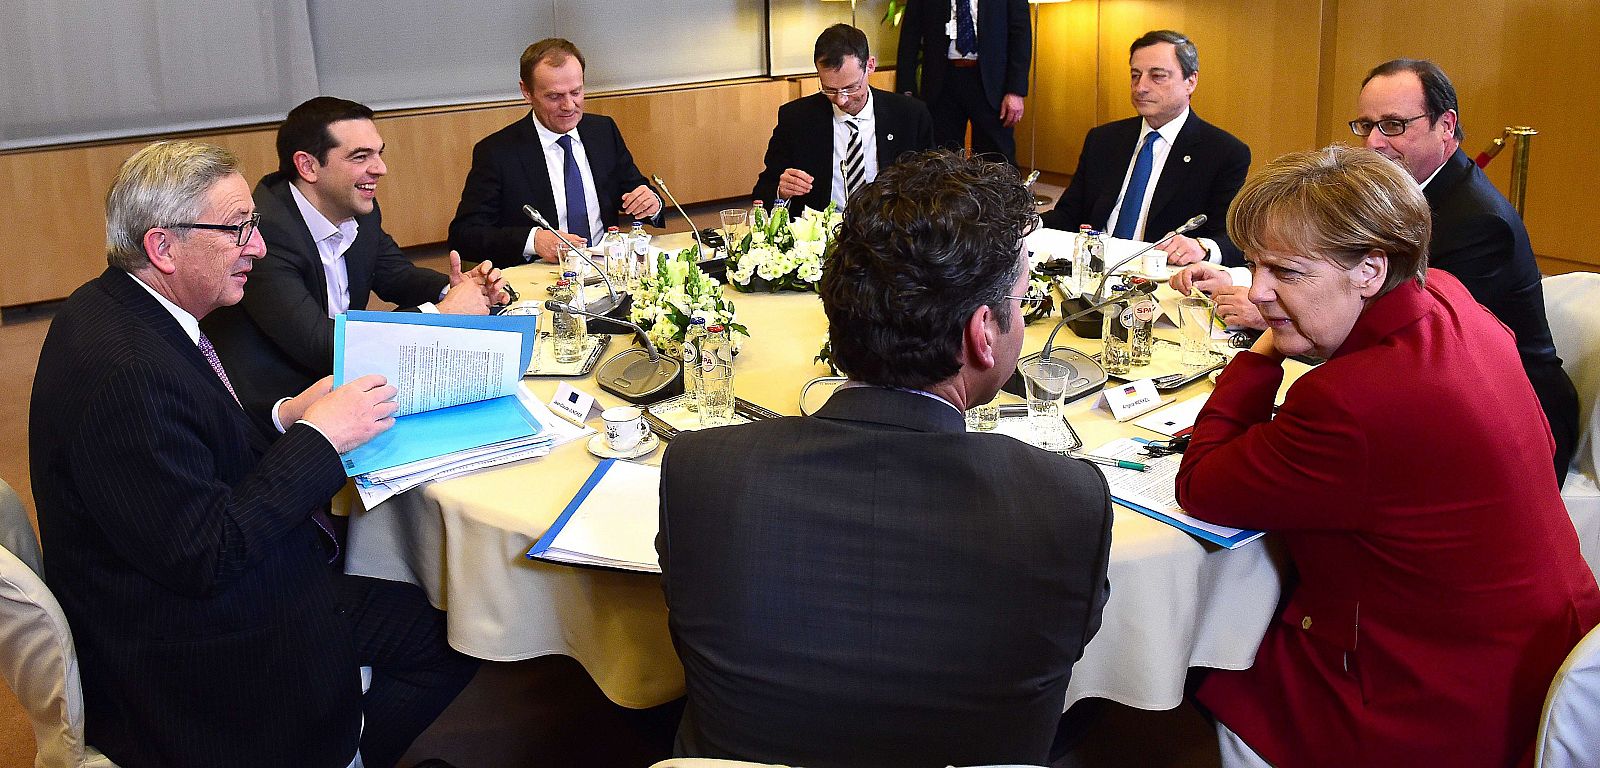 El primer ministro griego, Alexis Tsipras, se ha reunido durante más de tres horas con Juncker, Tusk, Merkel, Draghi, Hollande y Dijsselbloem.